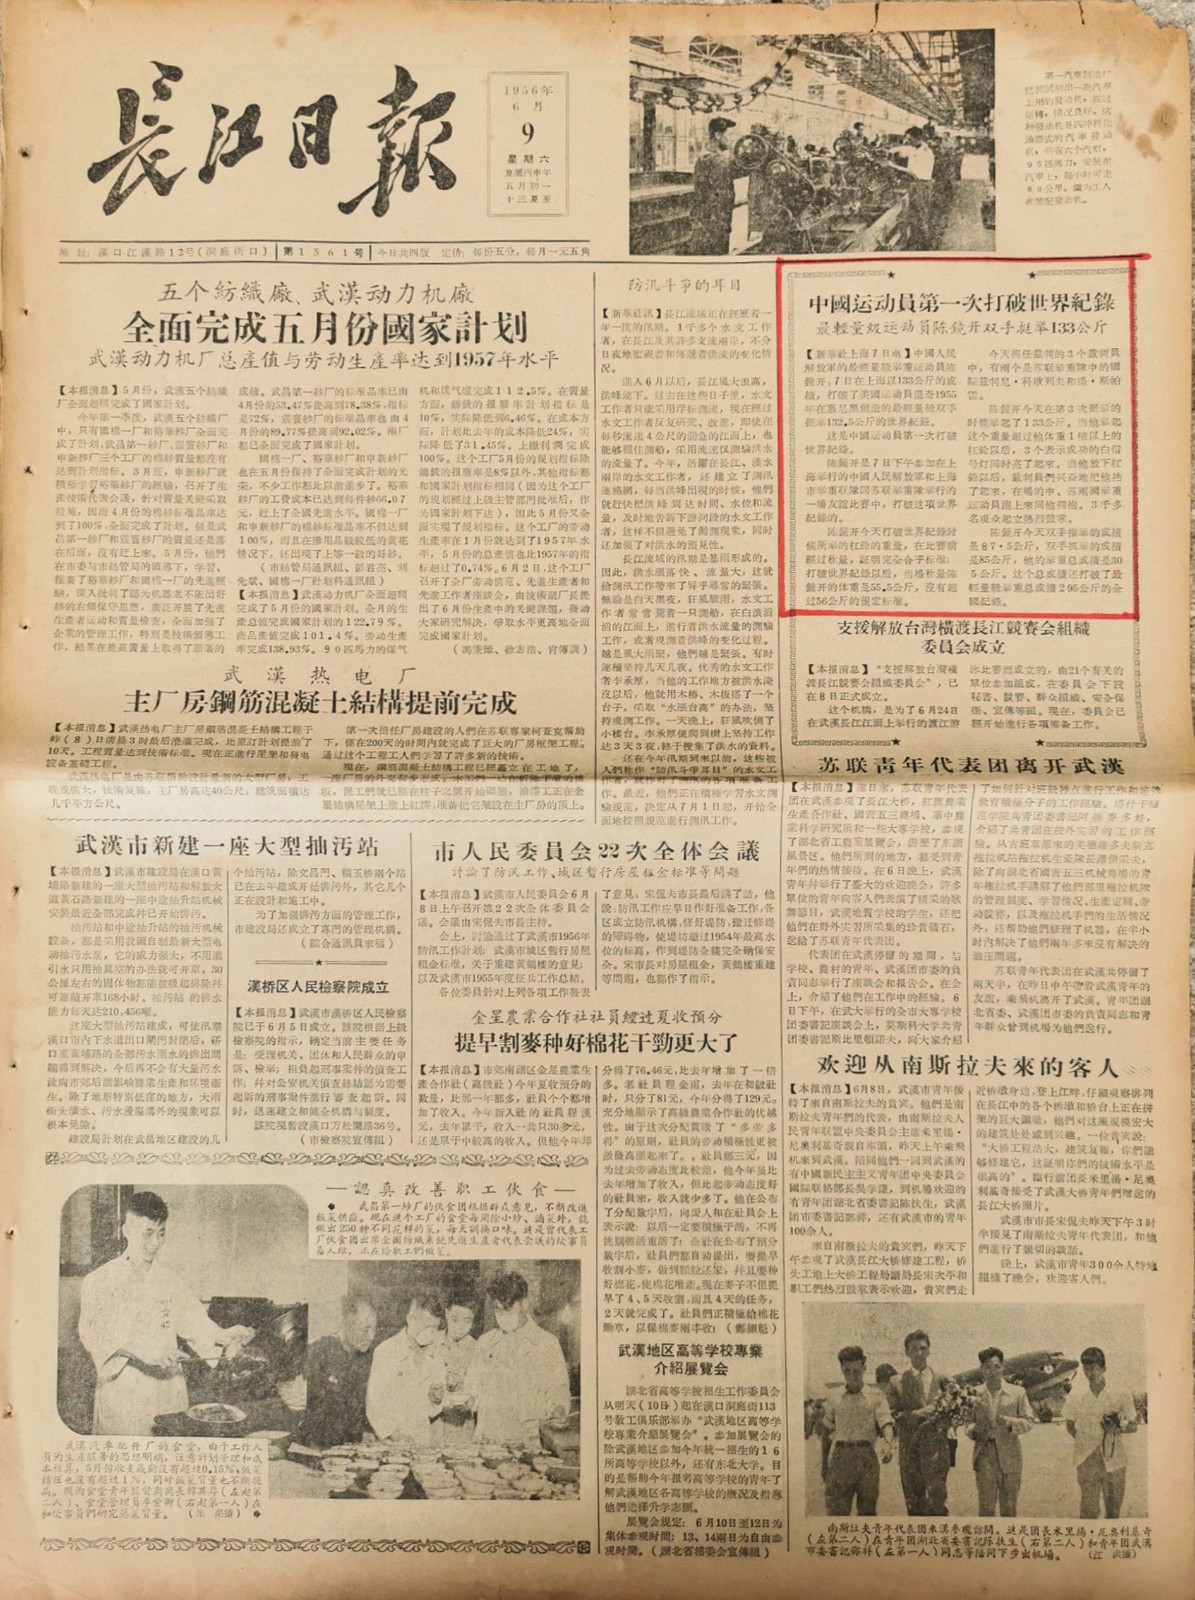 1956中国运动员首次打破世界纪录